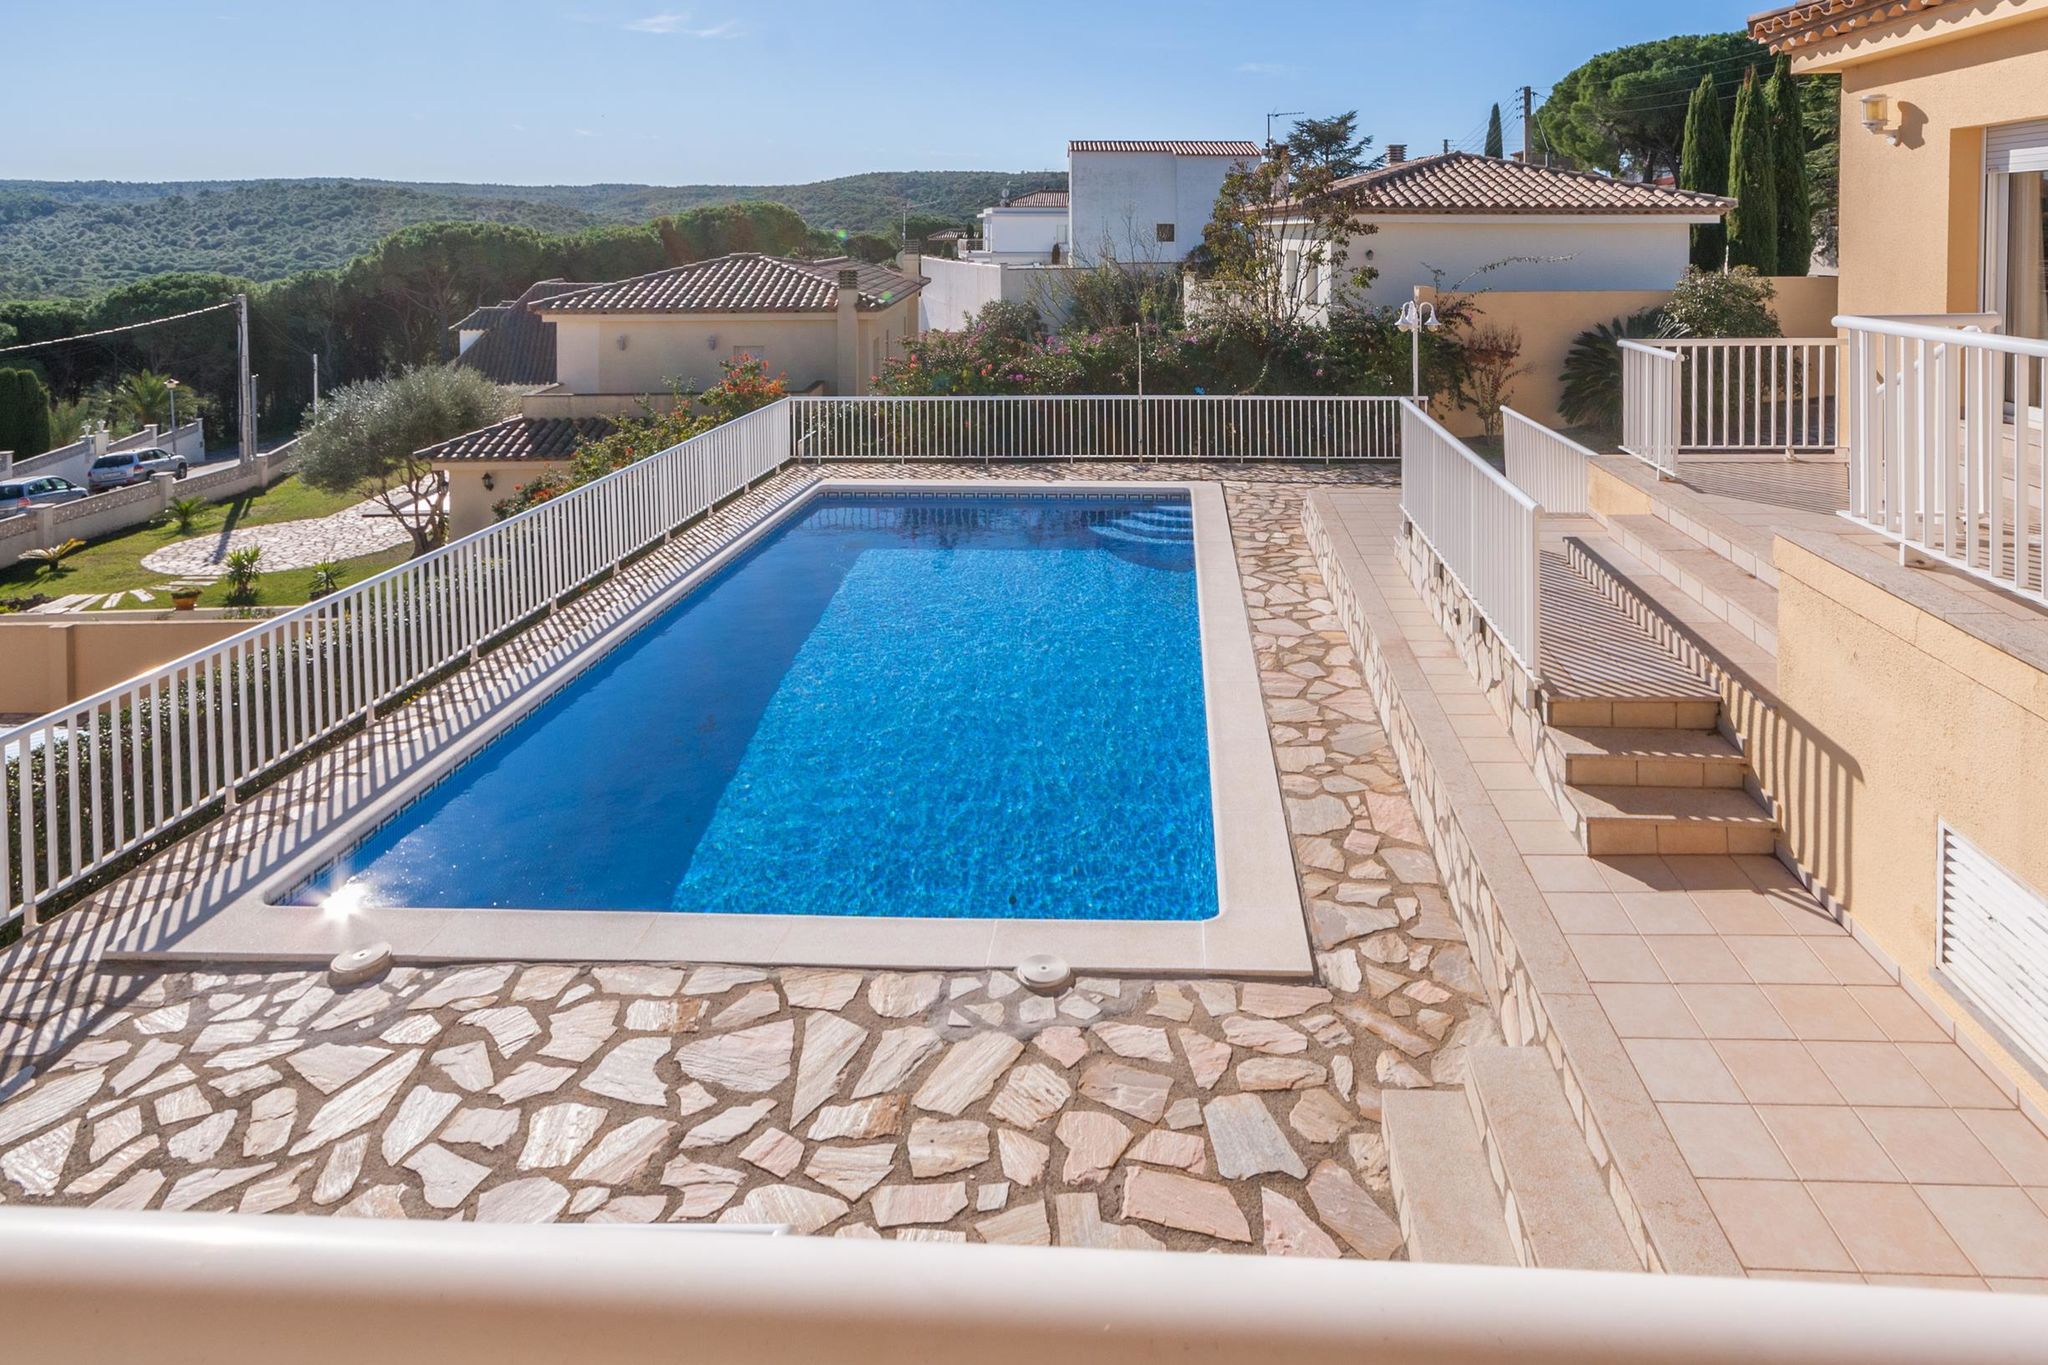 Hébergement avec piscine privée et une vue fantastique sur la mer Méditerranée